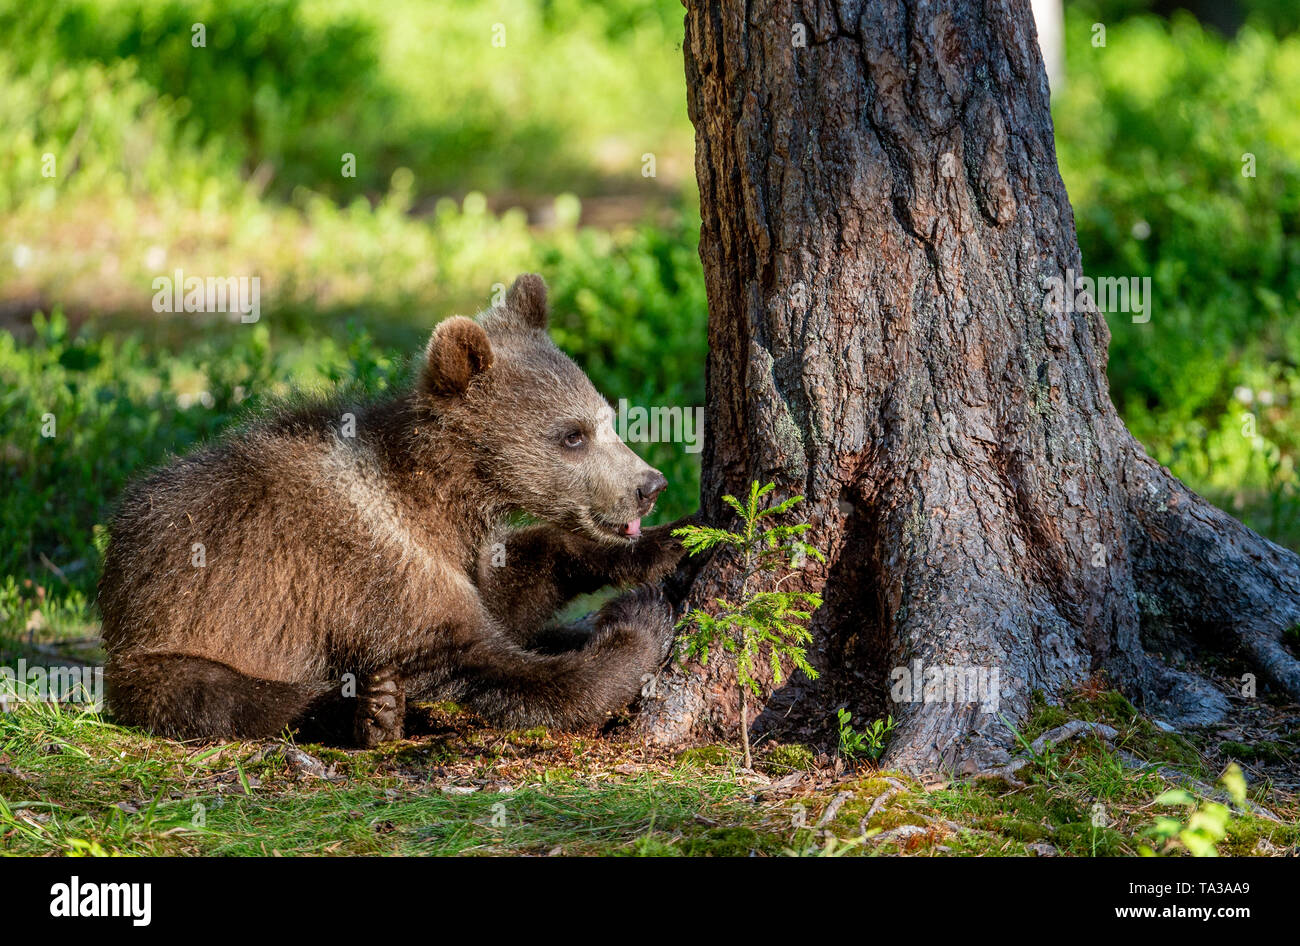 Cub von Braunbär im Sommer Wald. Natürlicher Lebensraum. Wissenschaftlicher Name: Ursus arctos. Stockfoto